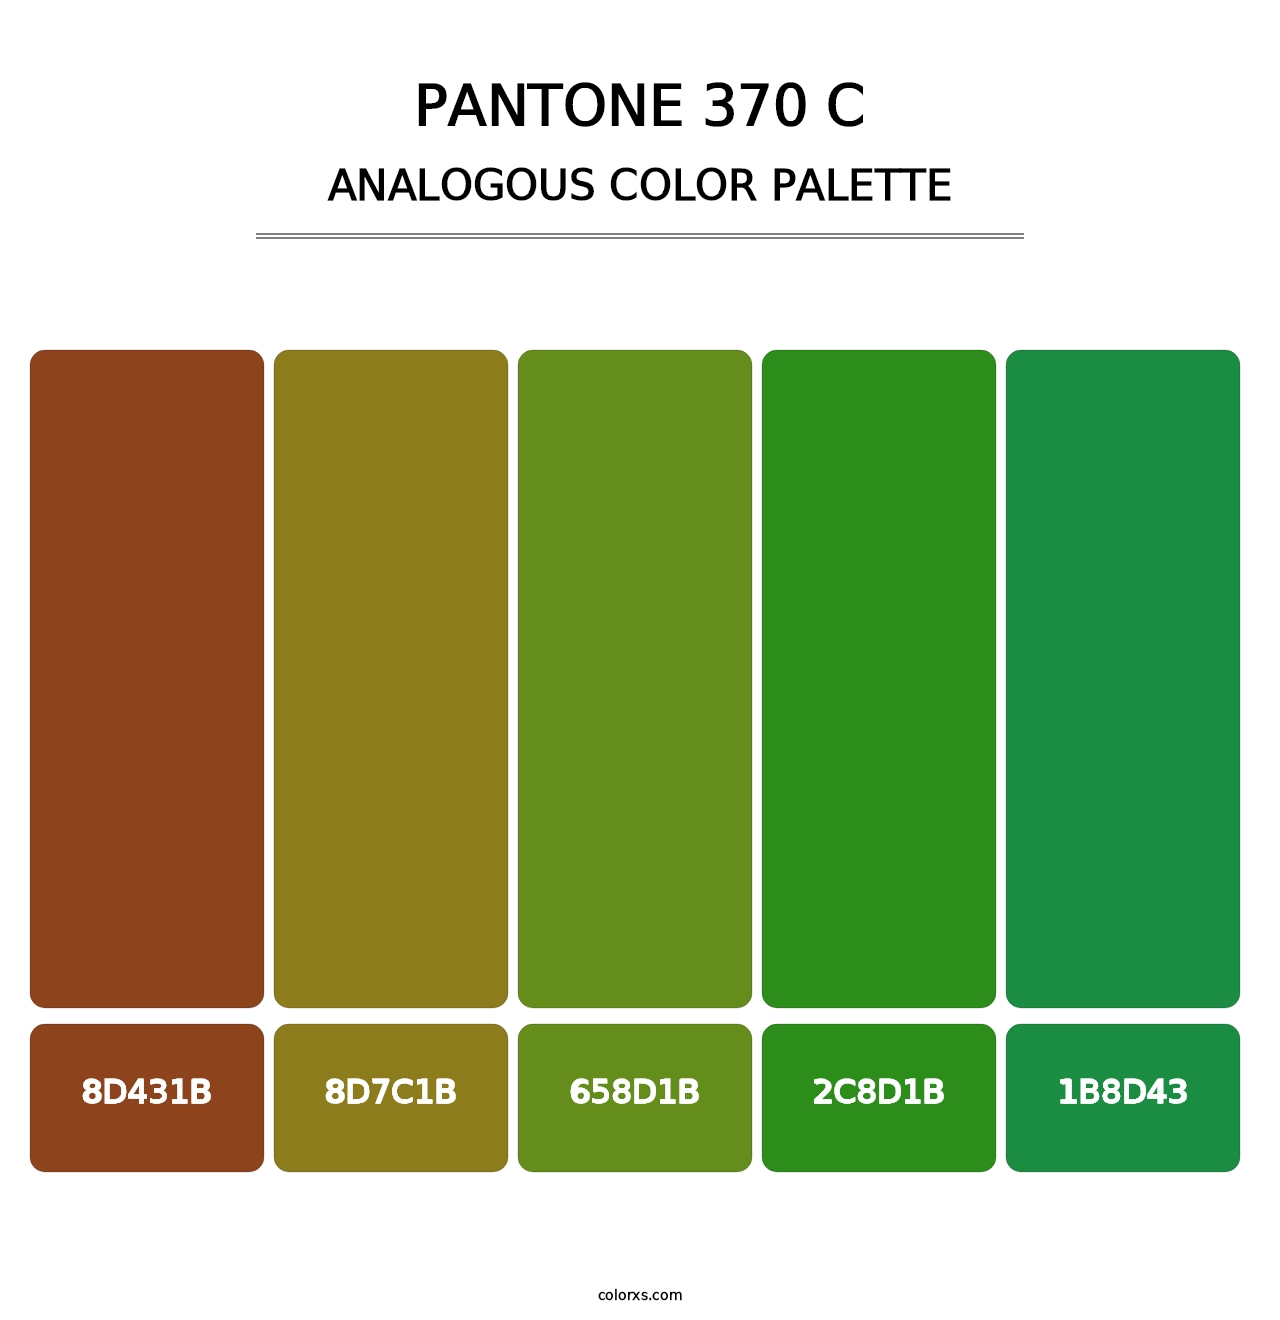 PANTONE 370 C - Analogous Color Palette